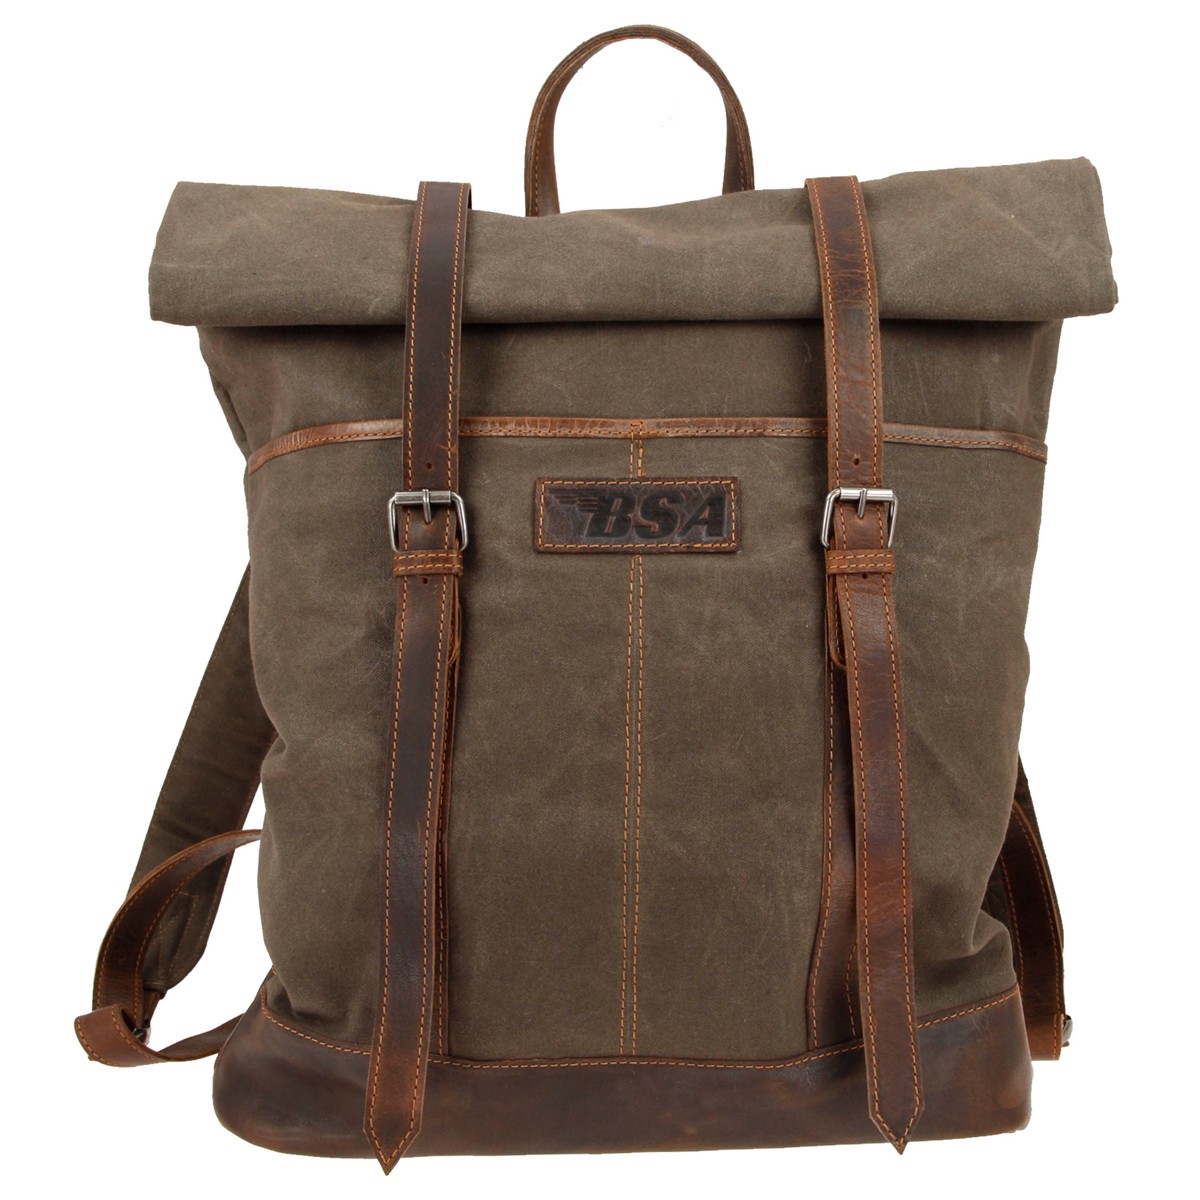 bsa-backpack-bag_3002_front